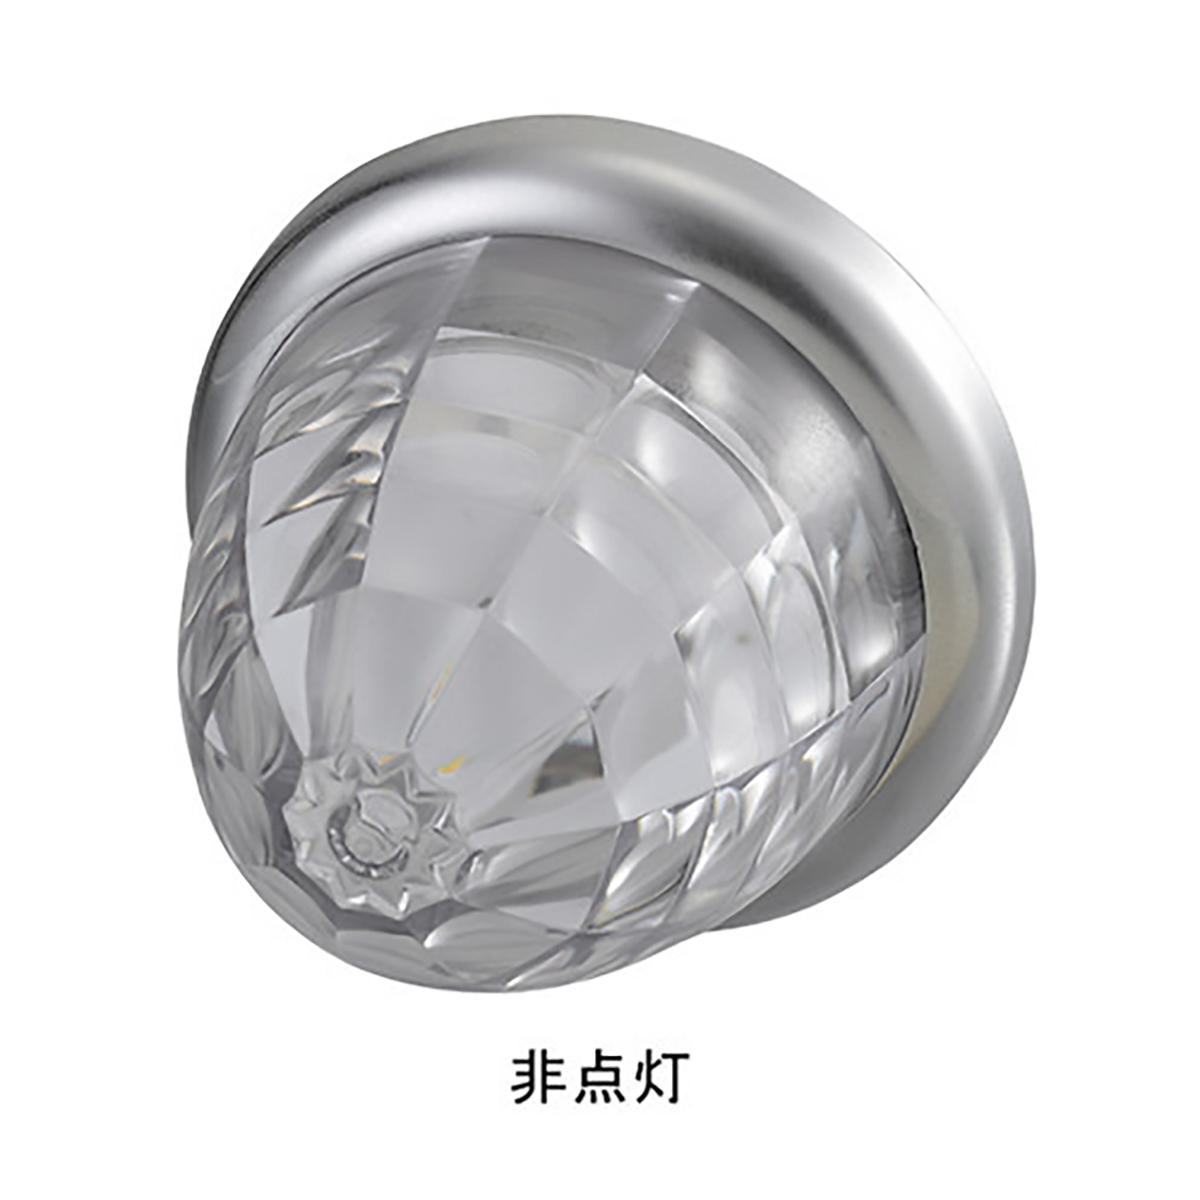 マーカー ランプ SMD LED プラスチックレンズ ホワイト DC12/DC24V 防水